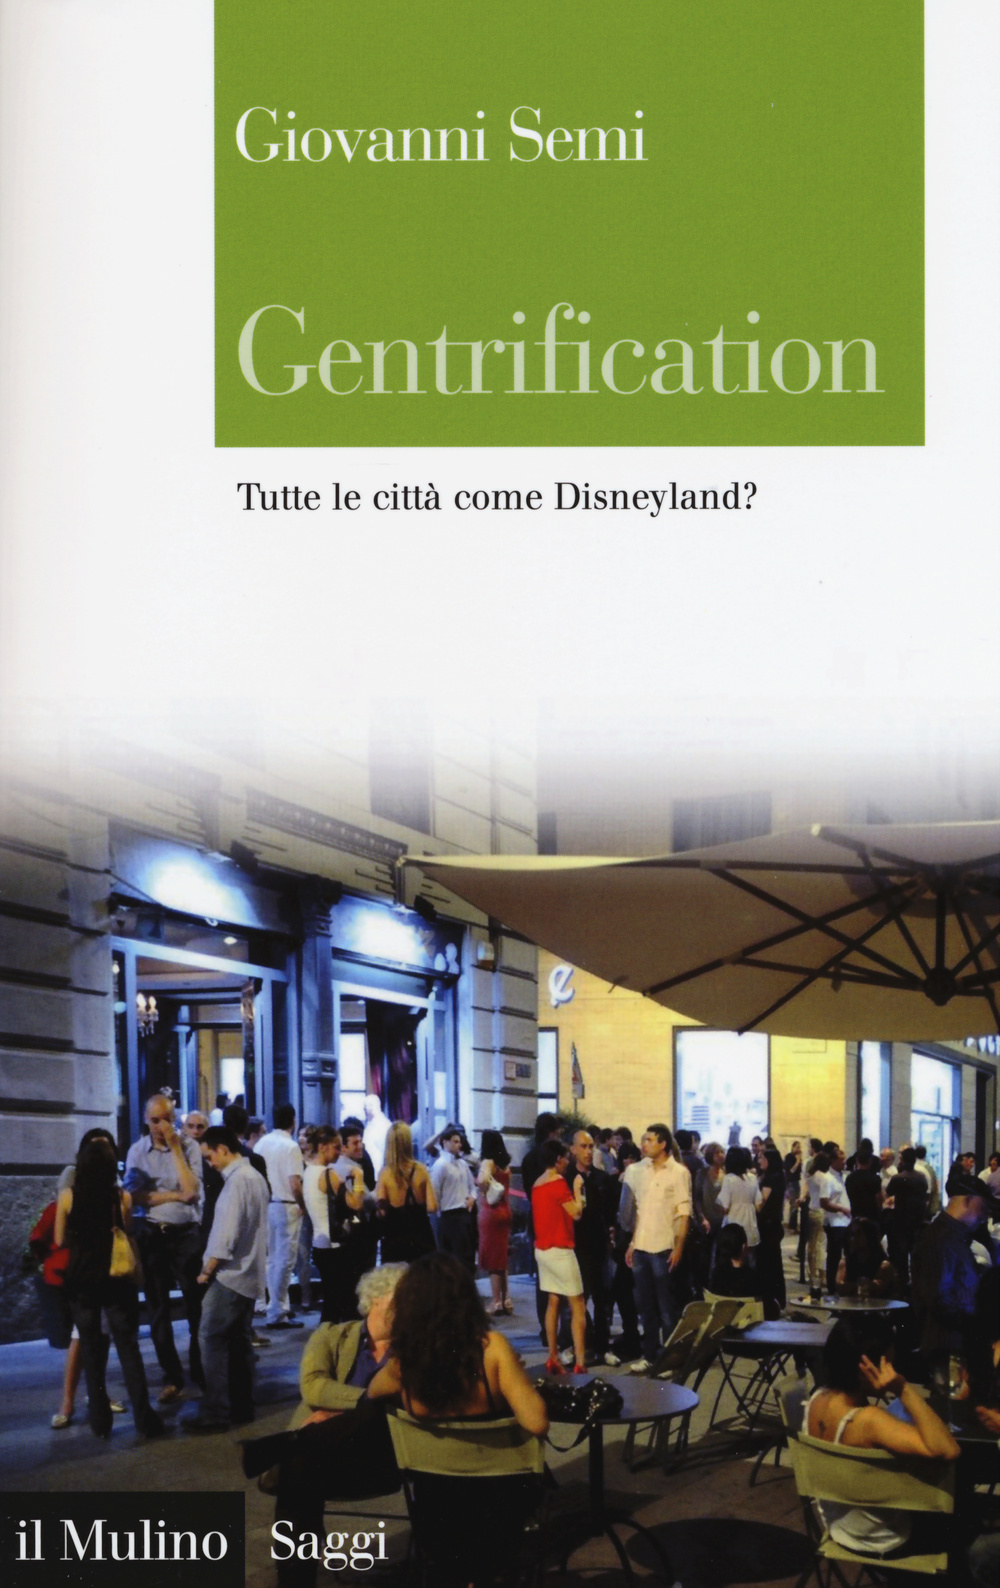 Libri Giovanni Semi - Gentrification. Tutte Le Citta Come Disneyland? NUOVO SIGILLATO, EDIZIONE DEL 10/09/2015 SUBITO DISPONIBILE